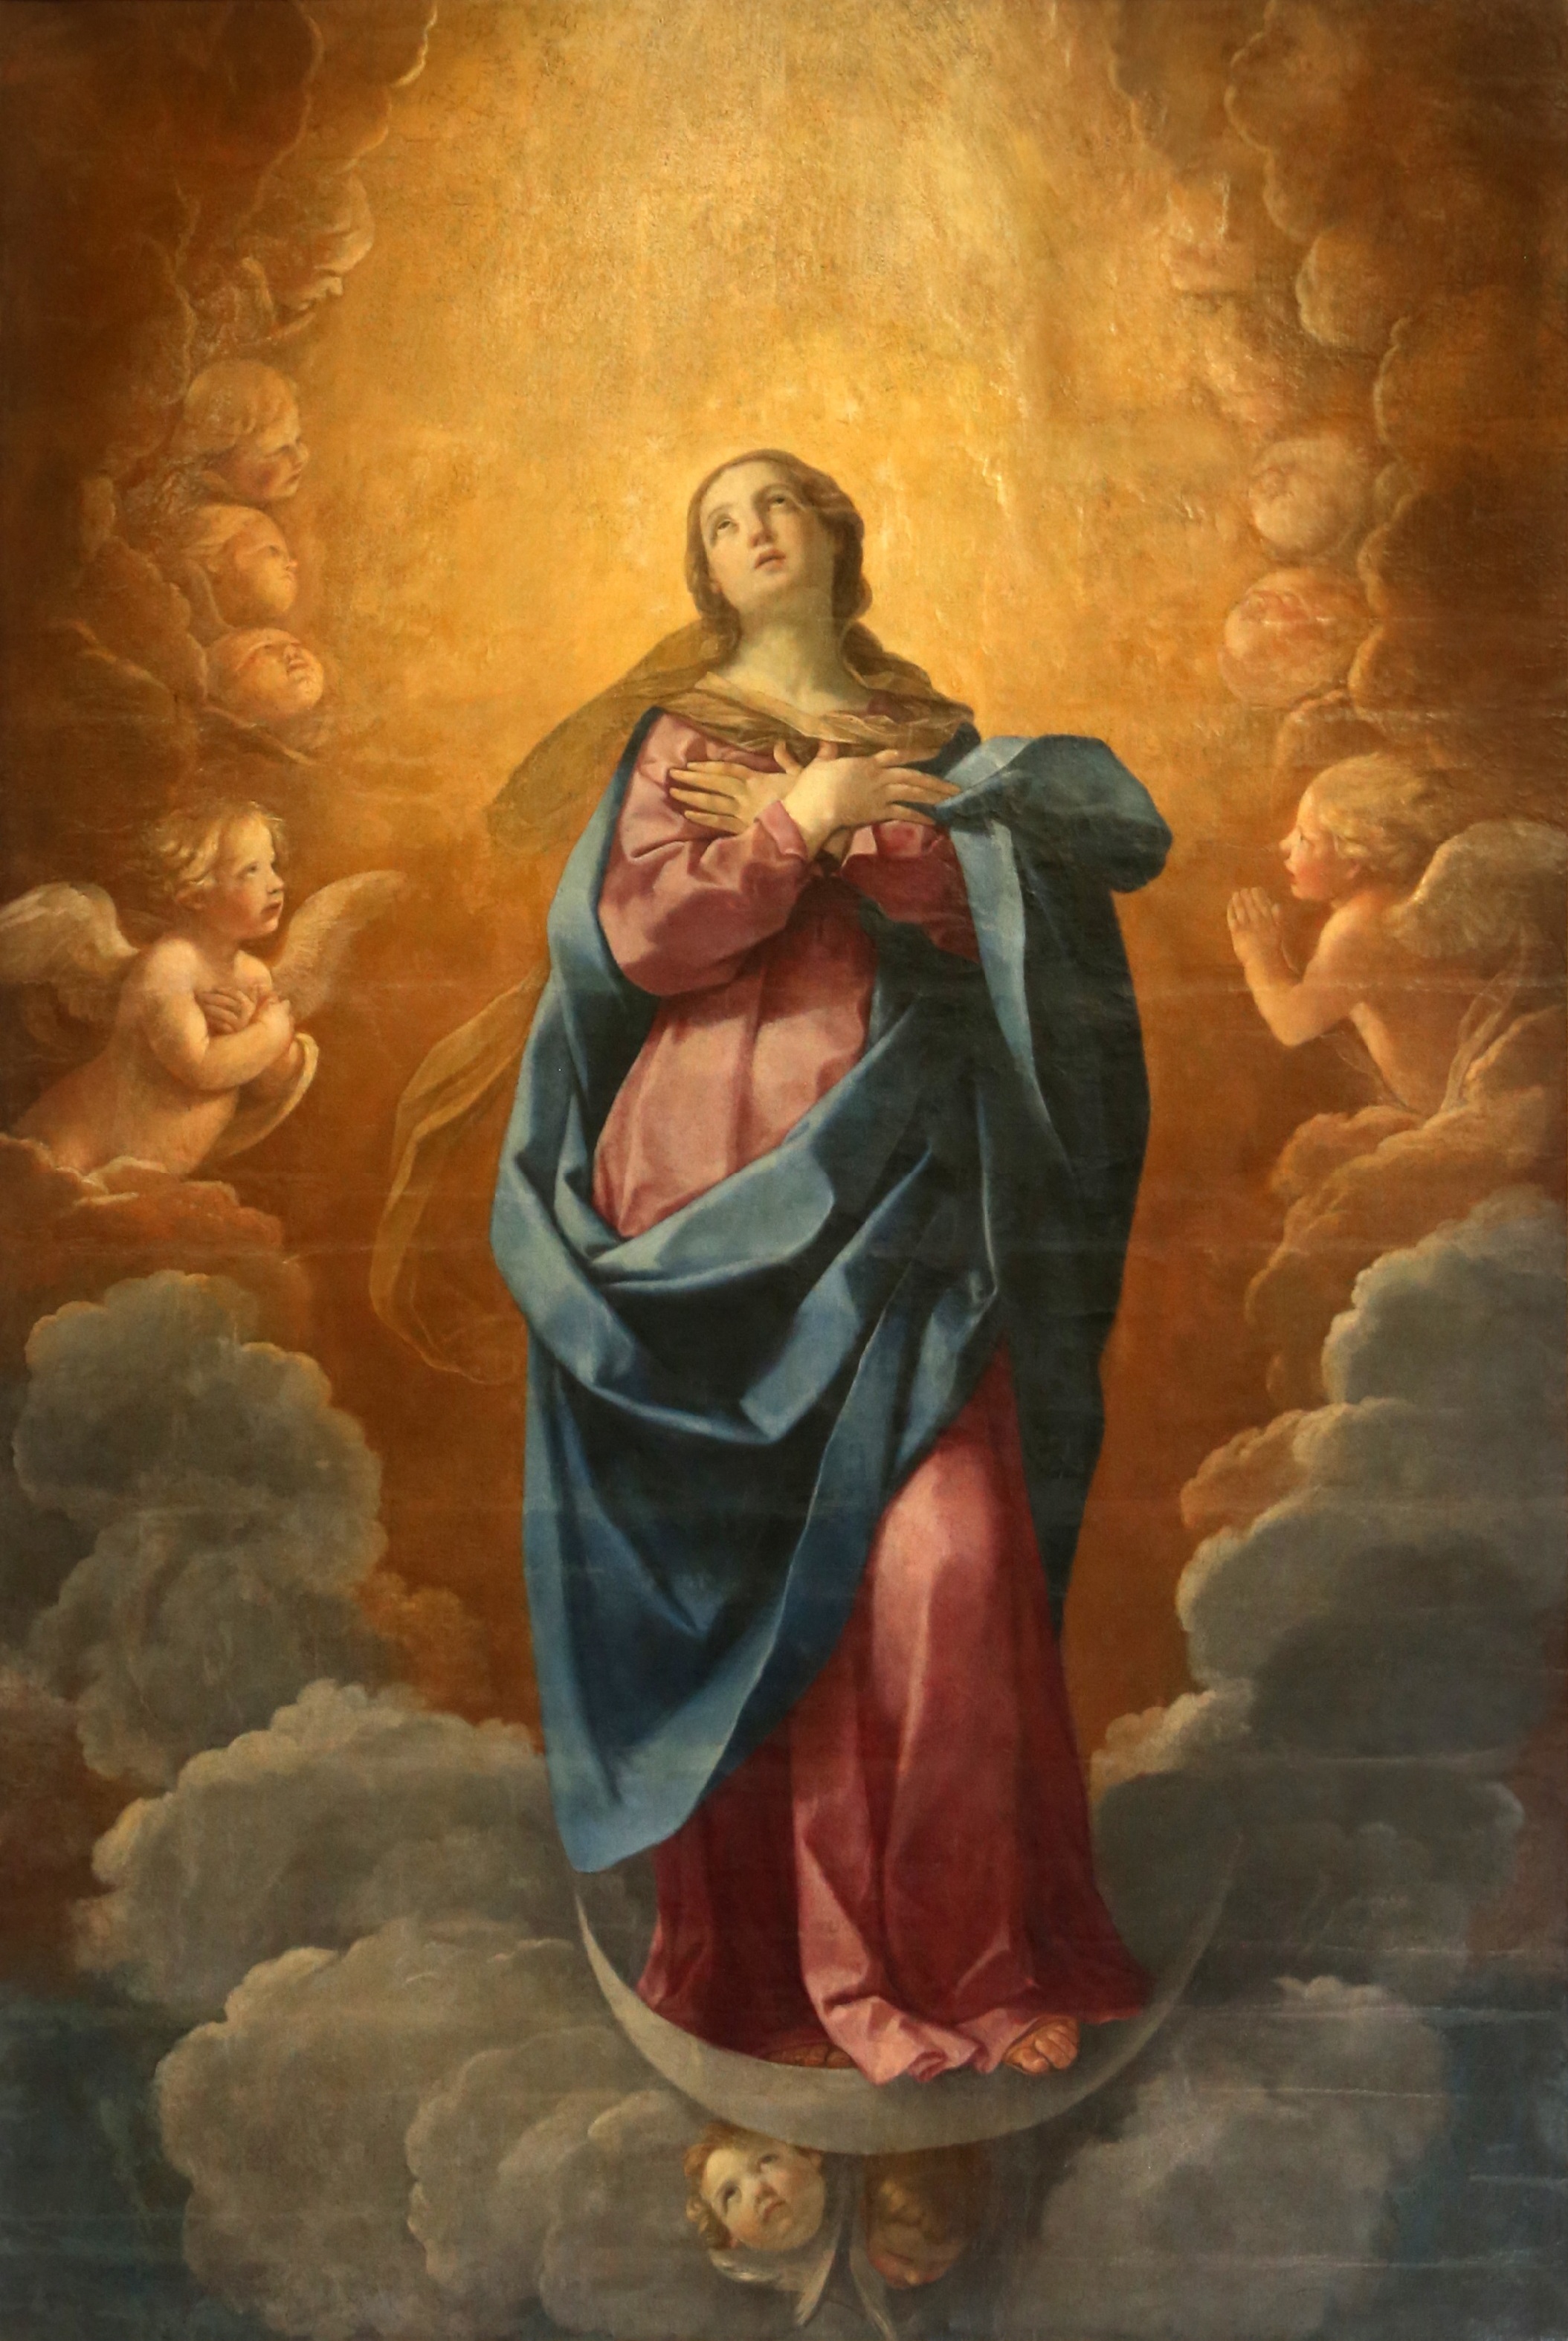 Niepokalane Poczęcie Najświętszej Maryi Panny. Guido Reni, 1622-1625.